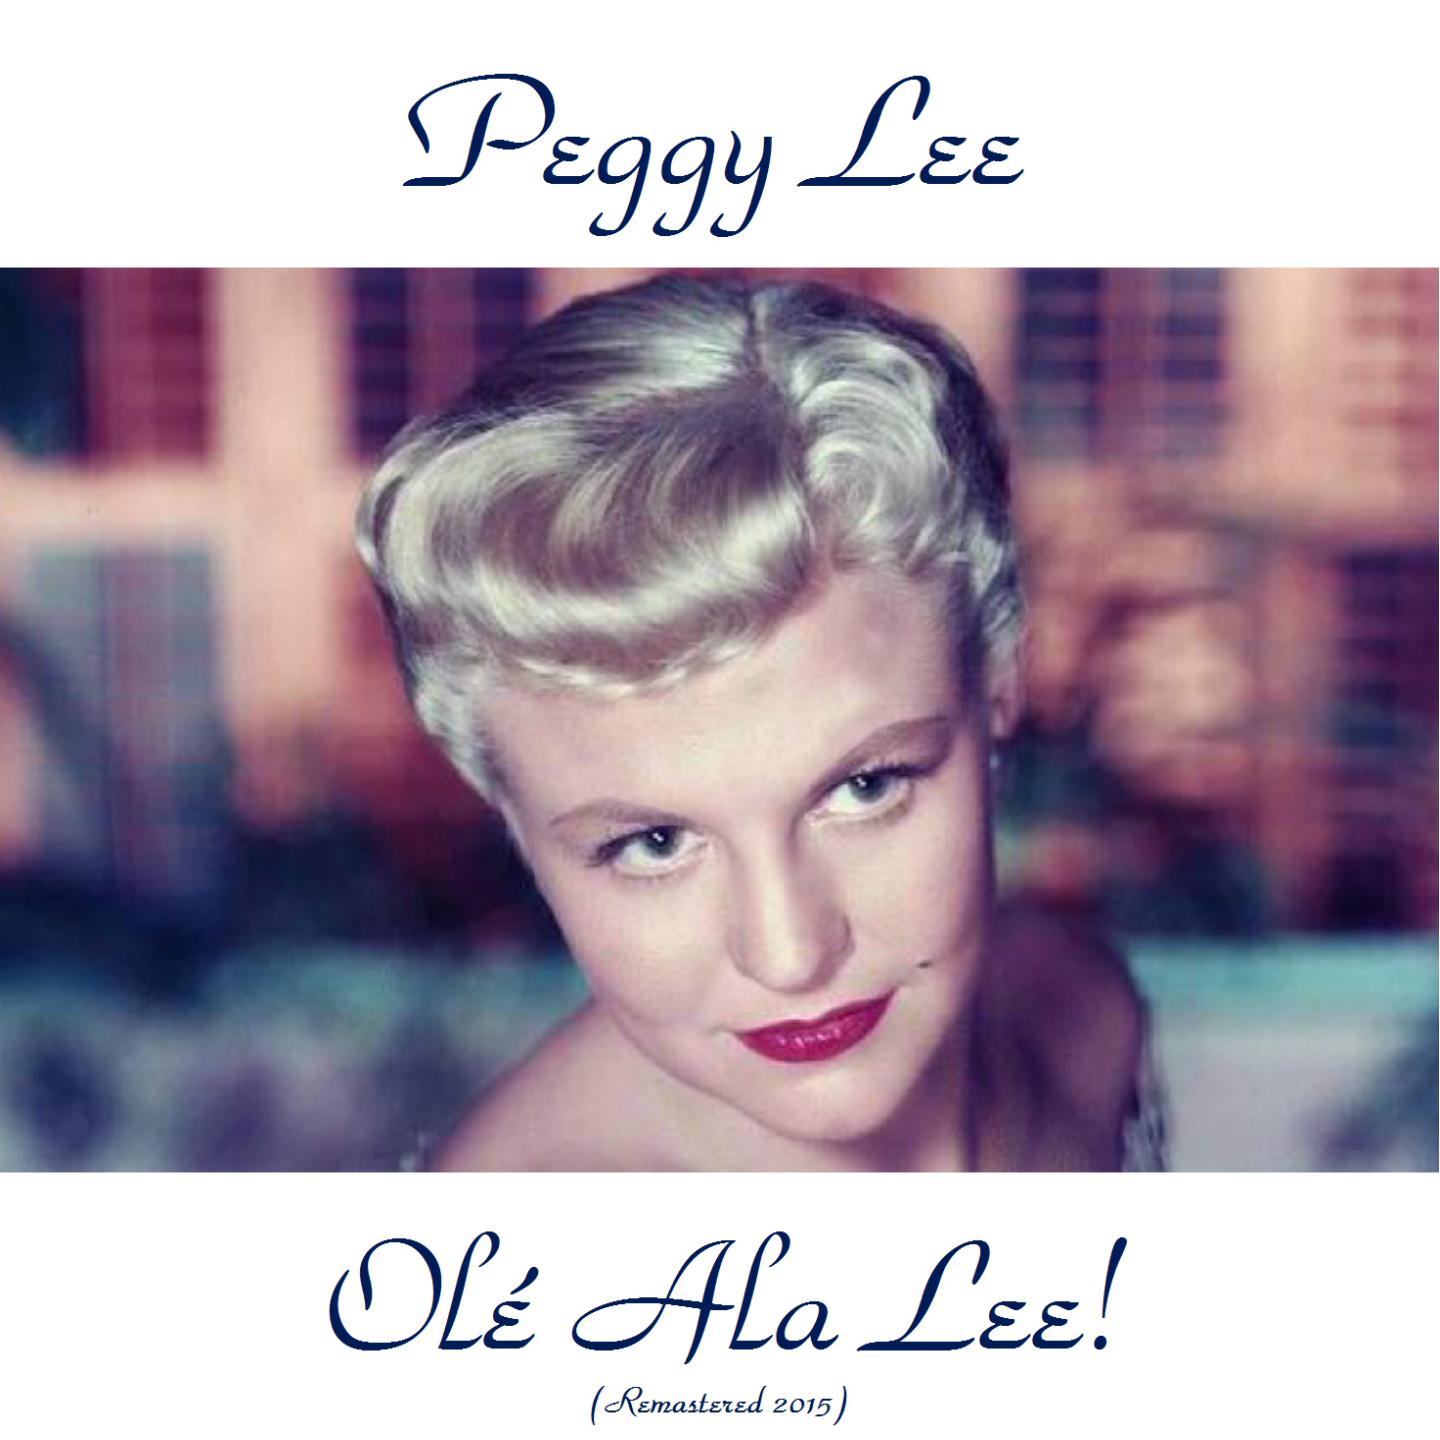 Ole Ala Lee! Remastered 2015